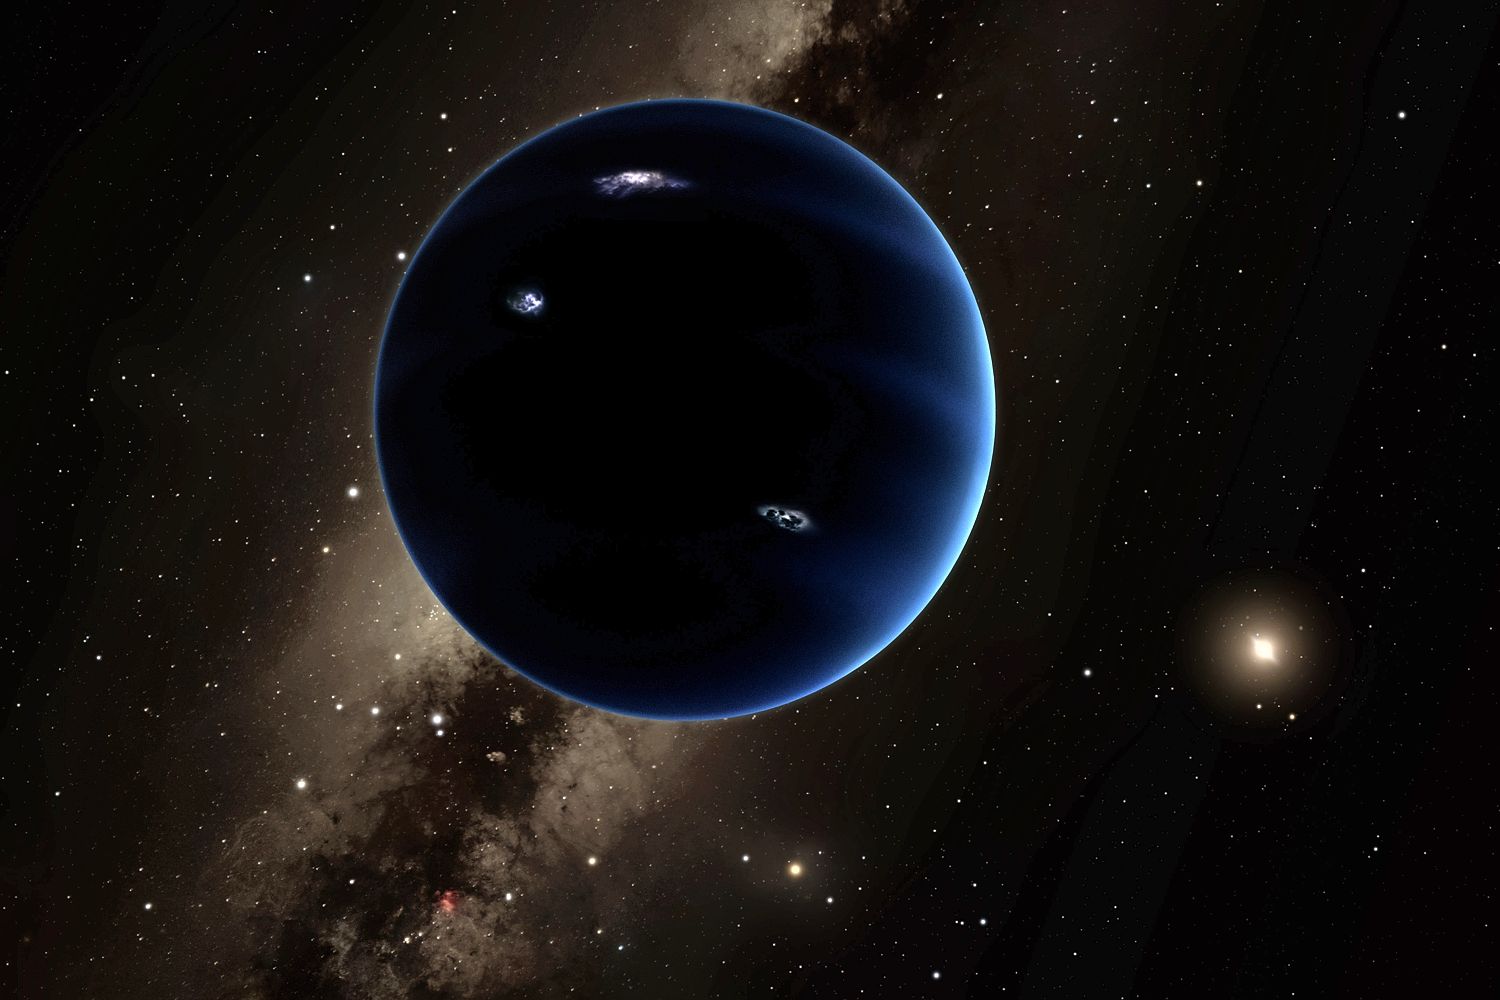 El Planeta Nueve es un planeta hipotético que podría explicar las órbitas inusuales de los objetos en los confines del sistema solar.